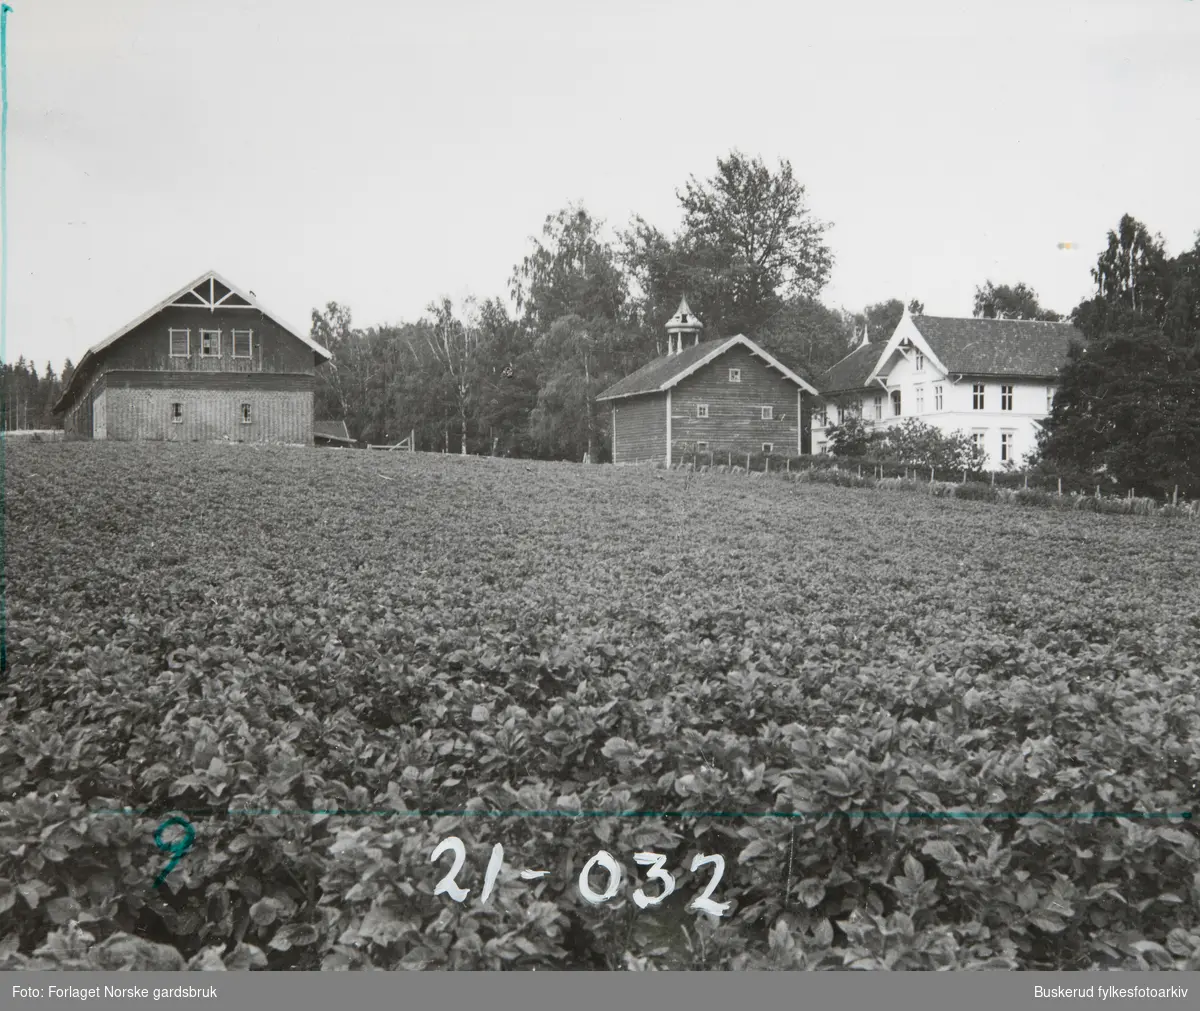 Vestre Hen gård 1944
Gnr 271, 274
Bnr 1,3, ,5
